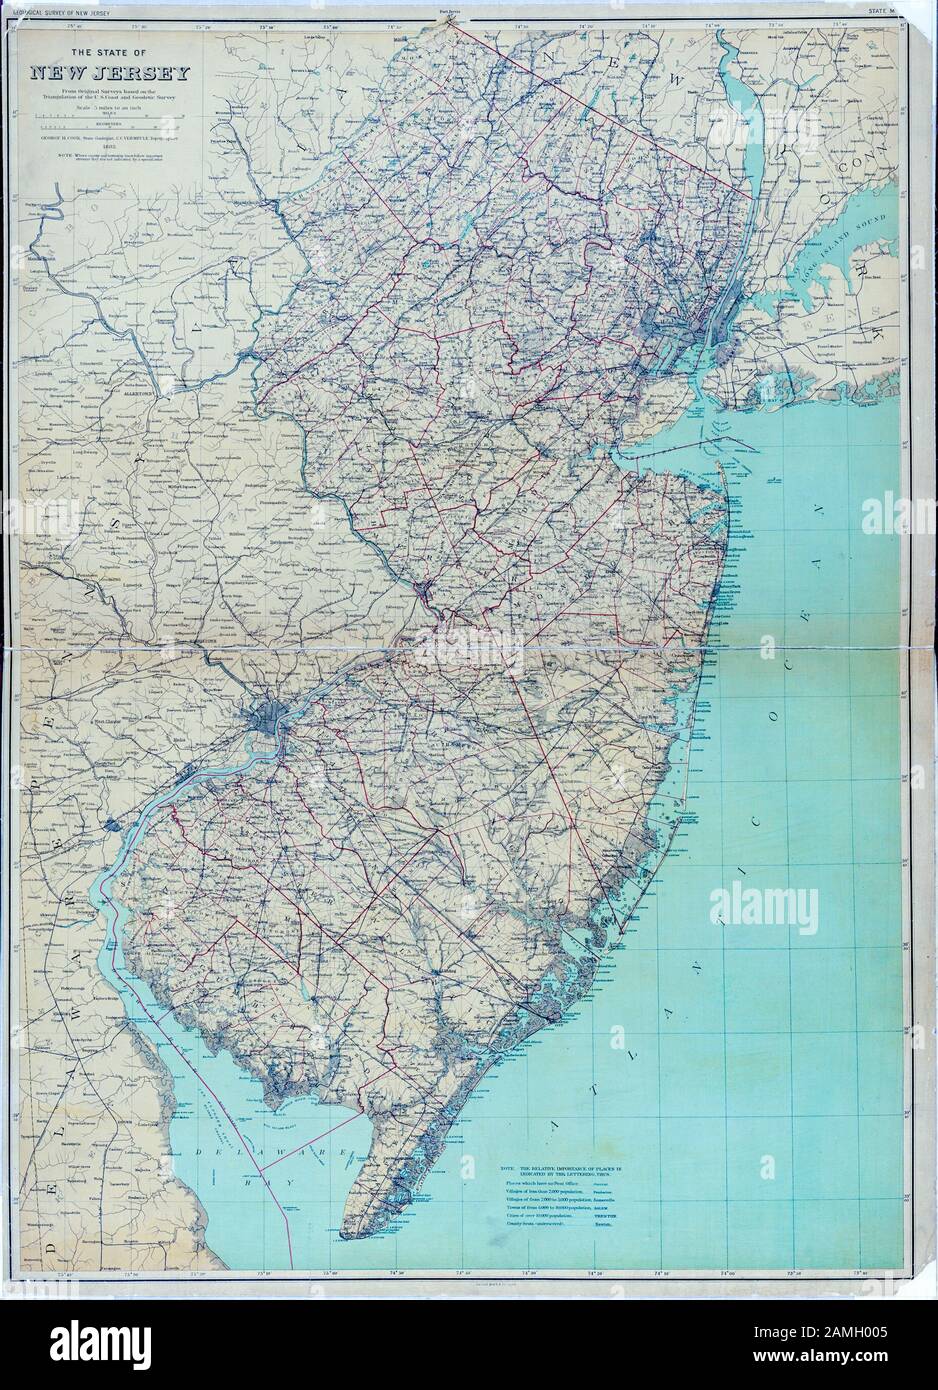 Mappa dei colori del New Jersey, uno stato nordorientale degli Stati Uniti, che mostra l'Oceano Atlantico e la baia del Delaware, pubblicato dal New Jersey Geological Survey e Julius Bien and Co, 1886. Dalla Biblioteca Pubblica Di New York. () Foto Stock